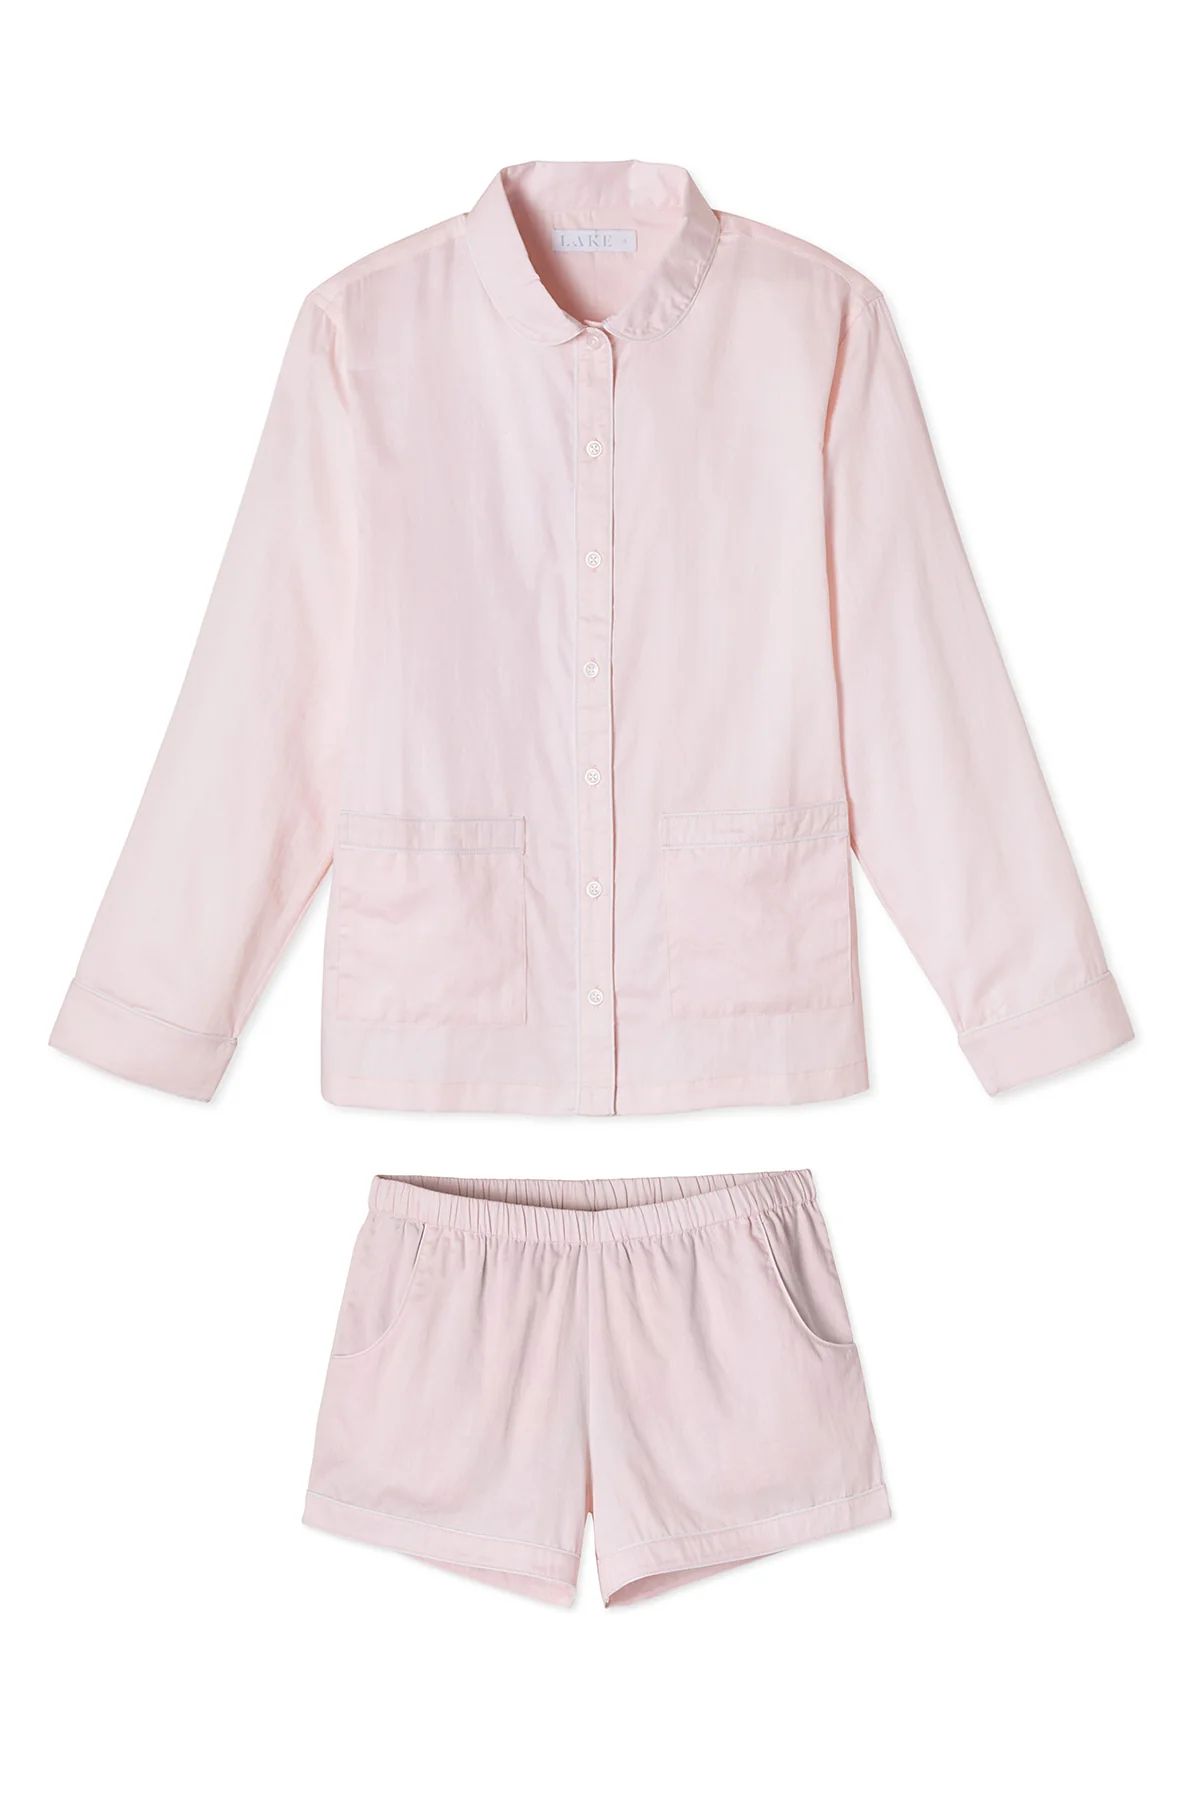 Poplin Piped Shorts Set in Pale Pink | LAKE Pajamas